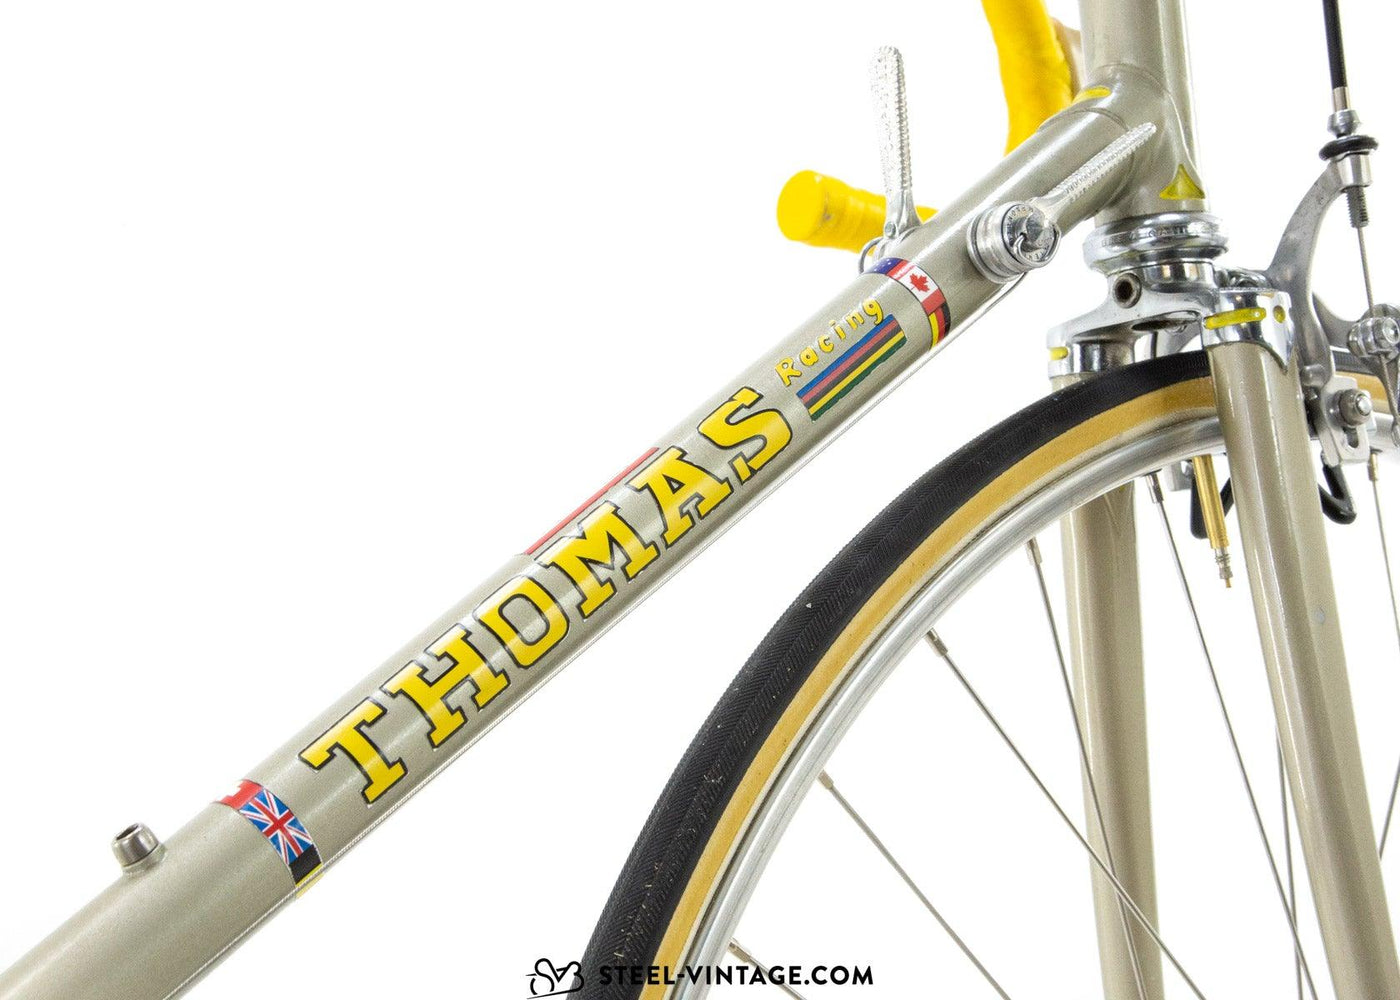 Thomas Racing by Tommasini Vintage Bicycle 1970s - Steel Vintage Bikes